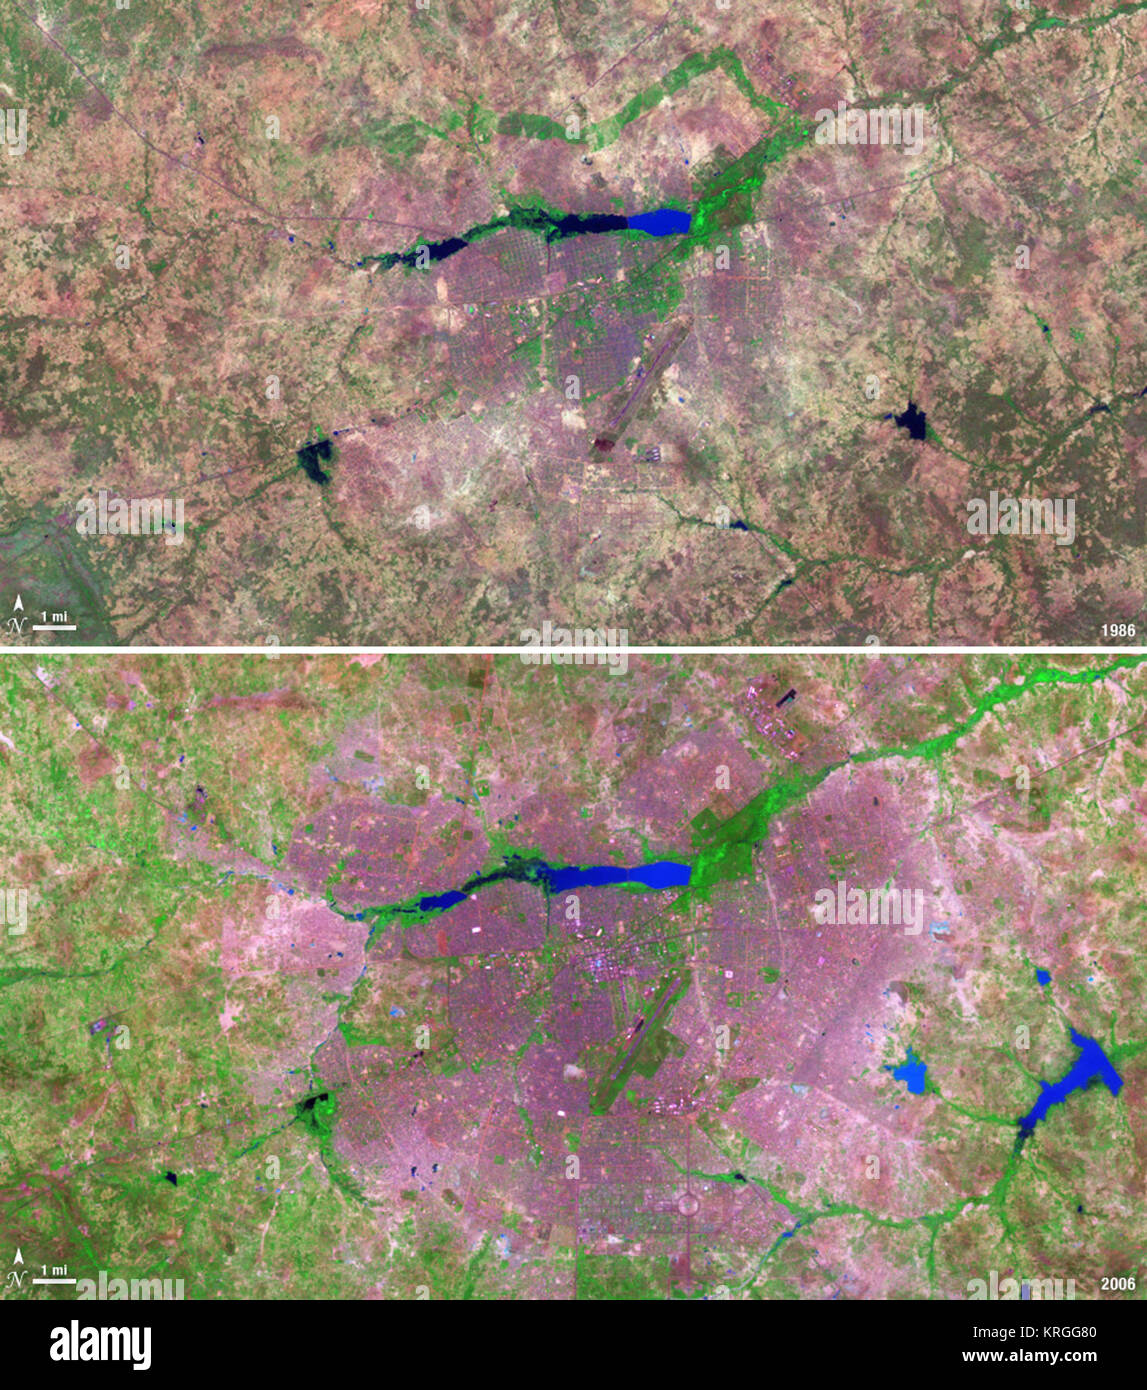 I paesi senza sbocco sul mare western nazione africana del Burkina Faso ha conosciuto un 200% di aumento della popolazione urbana tra 1975 e 2000. Come risultato, l'area della città capitale Ouagadougou è cresciuto di 14 volte durante questo periodo. Queste immagini Landsat mostrano l'espansione della città verso l'esterno dal suo centro nei due decenni tra il 1986 e il 2006. Il 9 novembre 18, 1986 Il satellite Landsat 5 satelliti acquisito questa immagine della capitale. Questa falsa immagine a colori mostra la vegetazione in shads di verde e grigio, acqua in varie tonalità di blu, e le aree urbane in rosa e viola. La pista di l'aeroporto della città può essere visto come una lunga Foto Stock